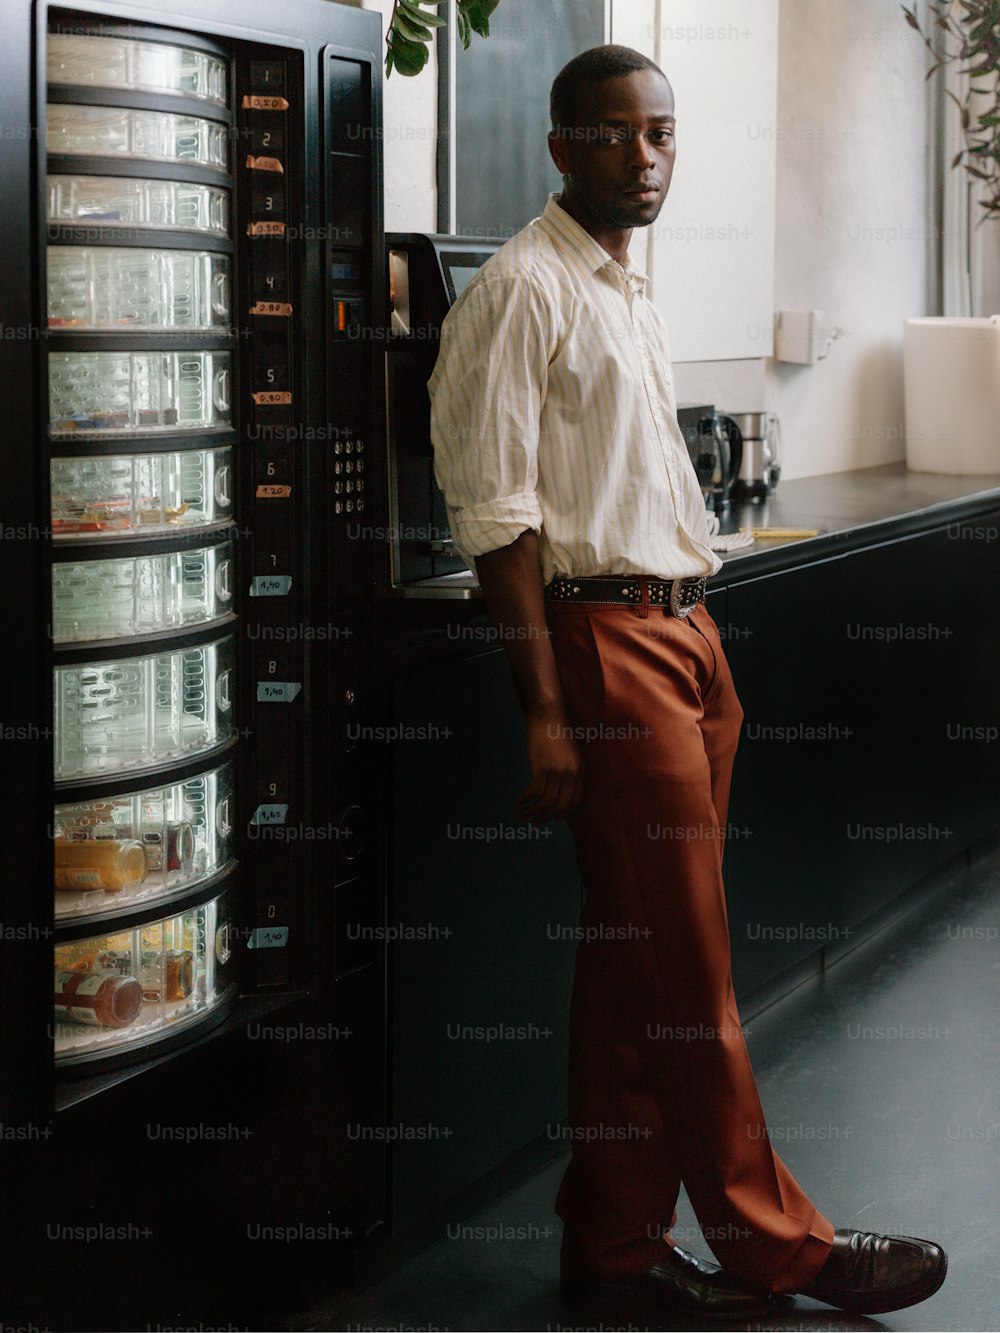 un homme debout devant un réfrigérateur